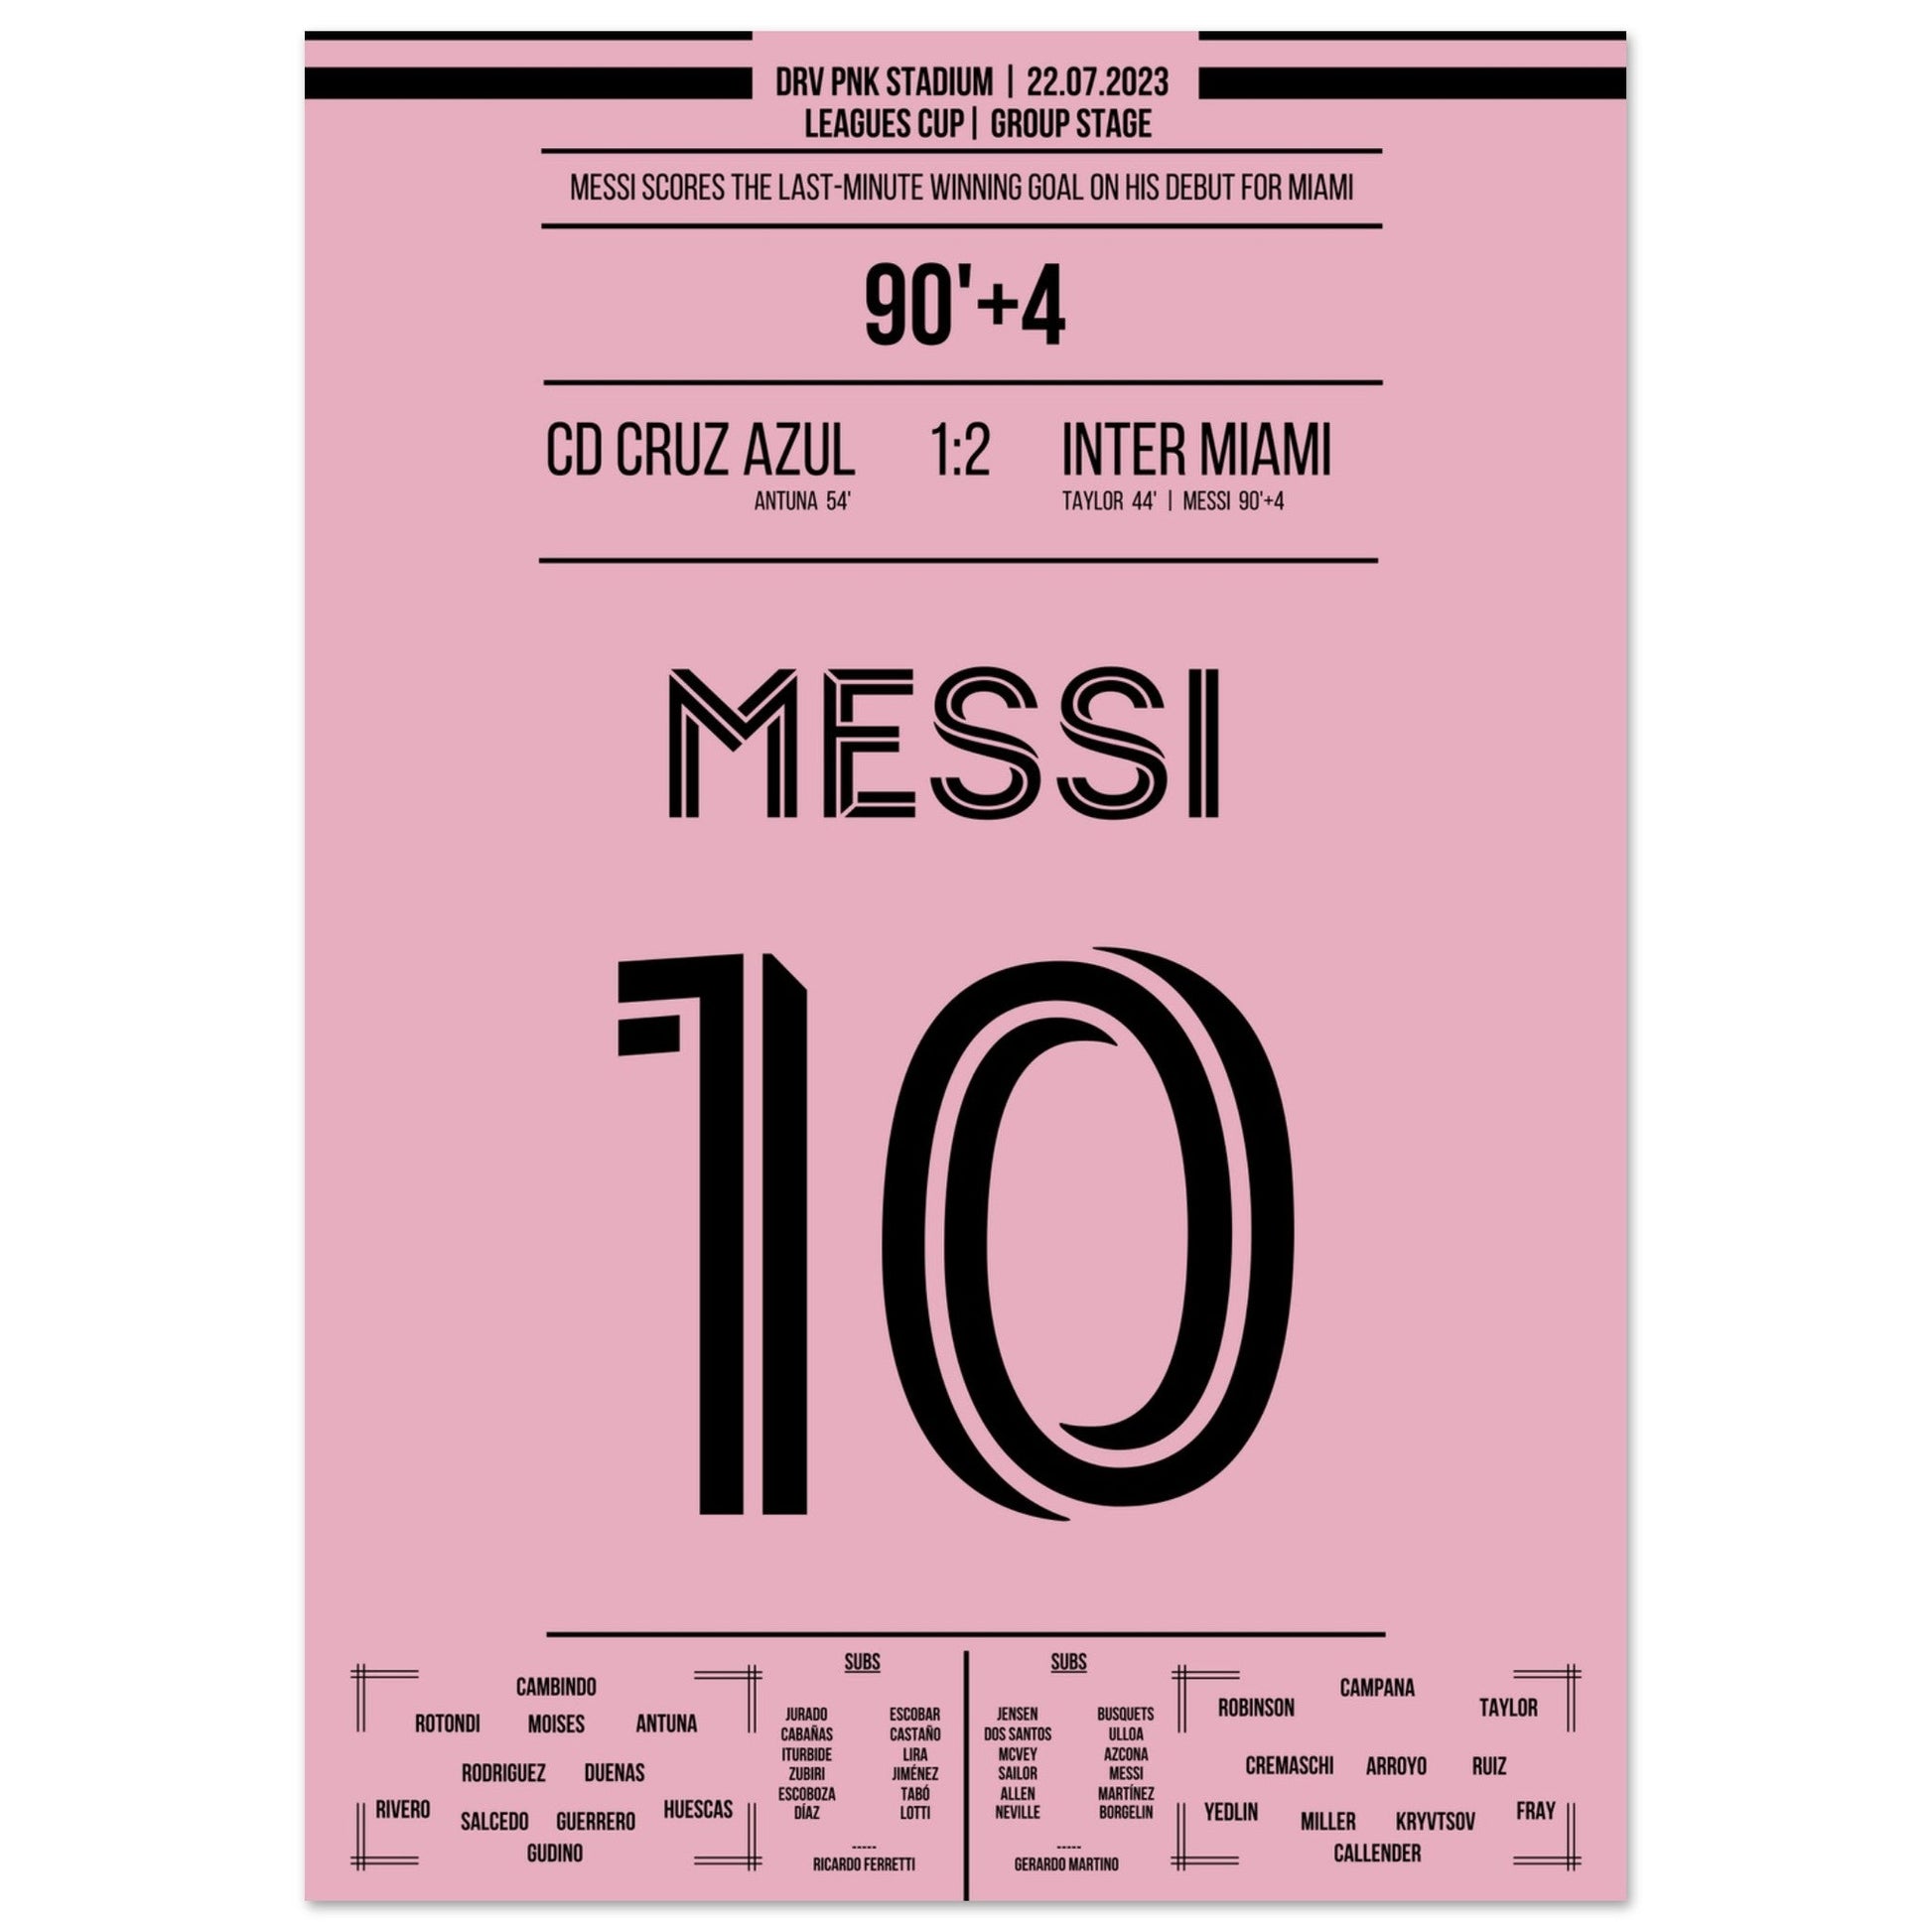 Messi's Siegtreffer beim Debüt für Miami 